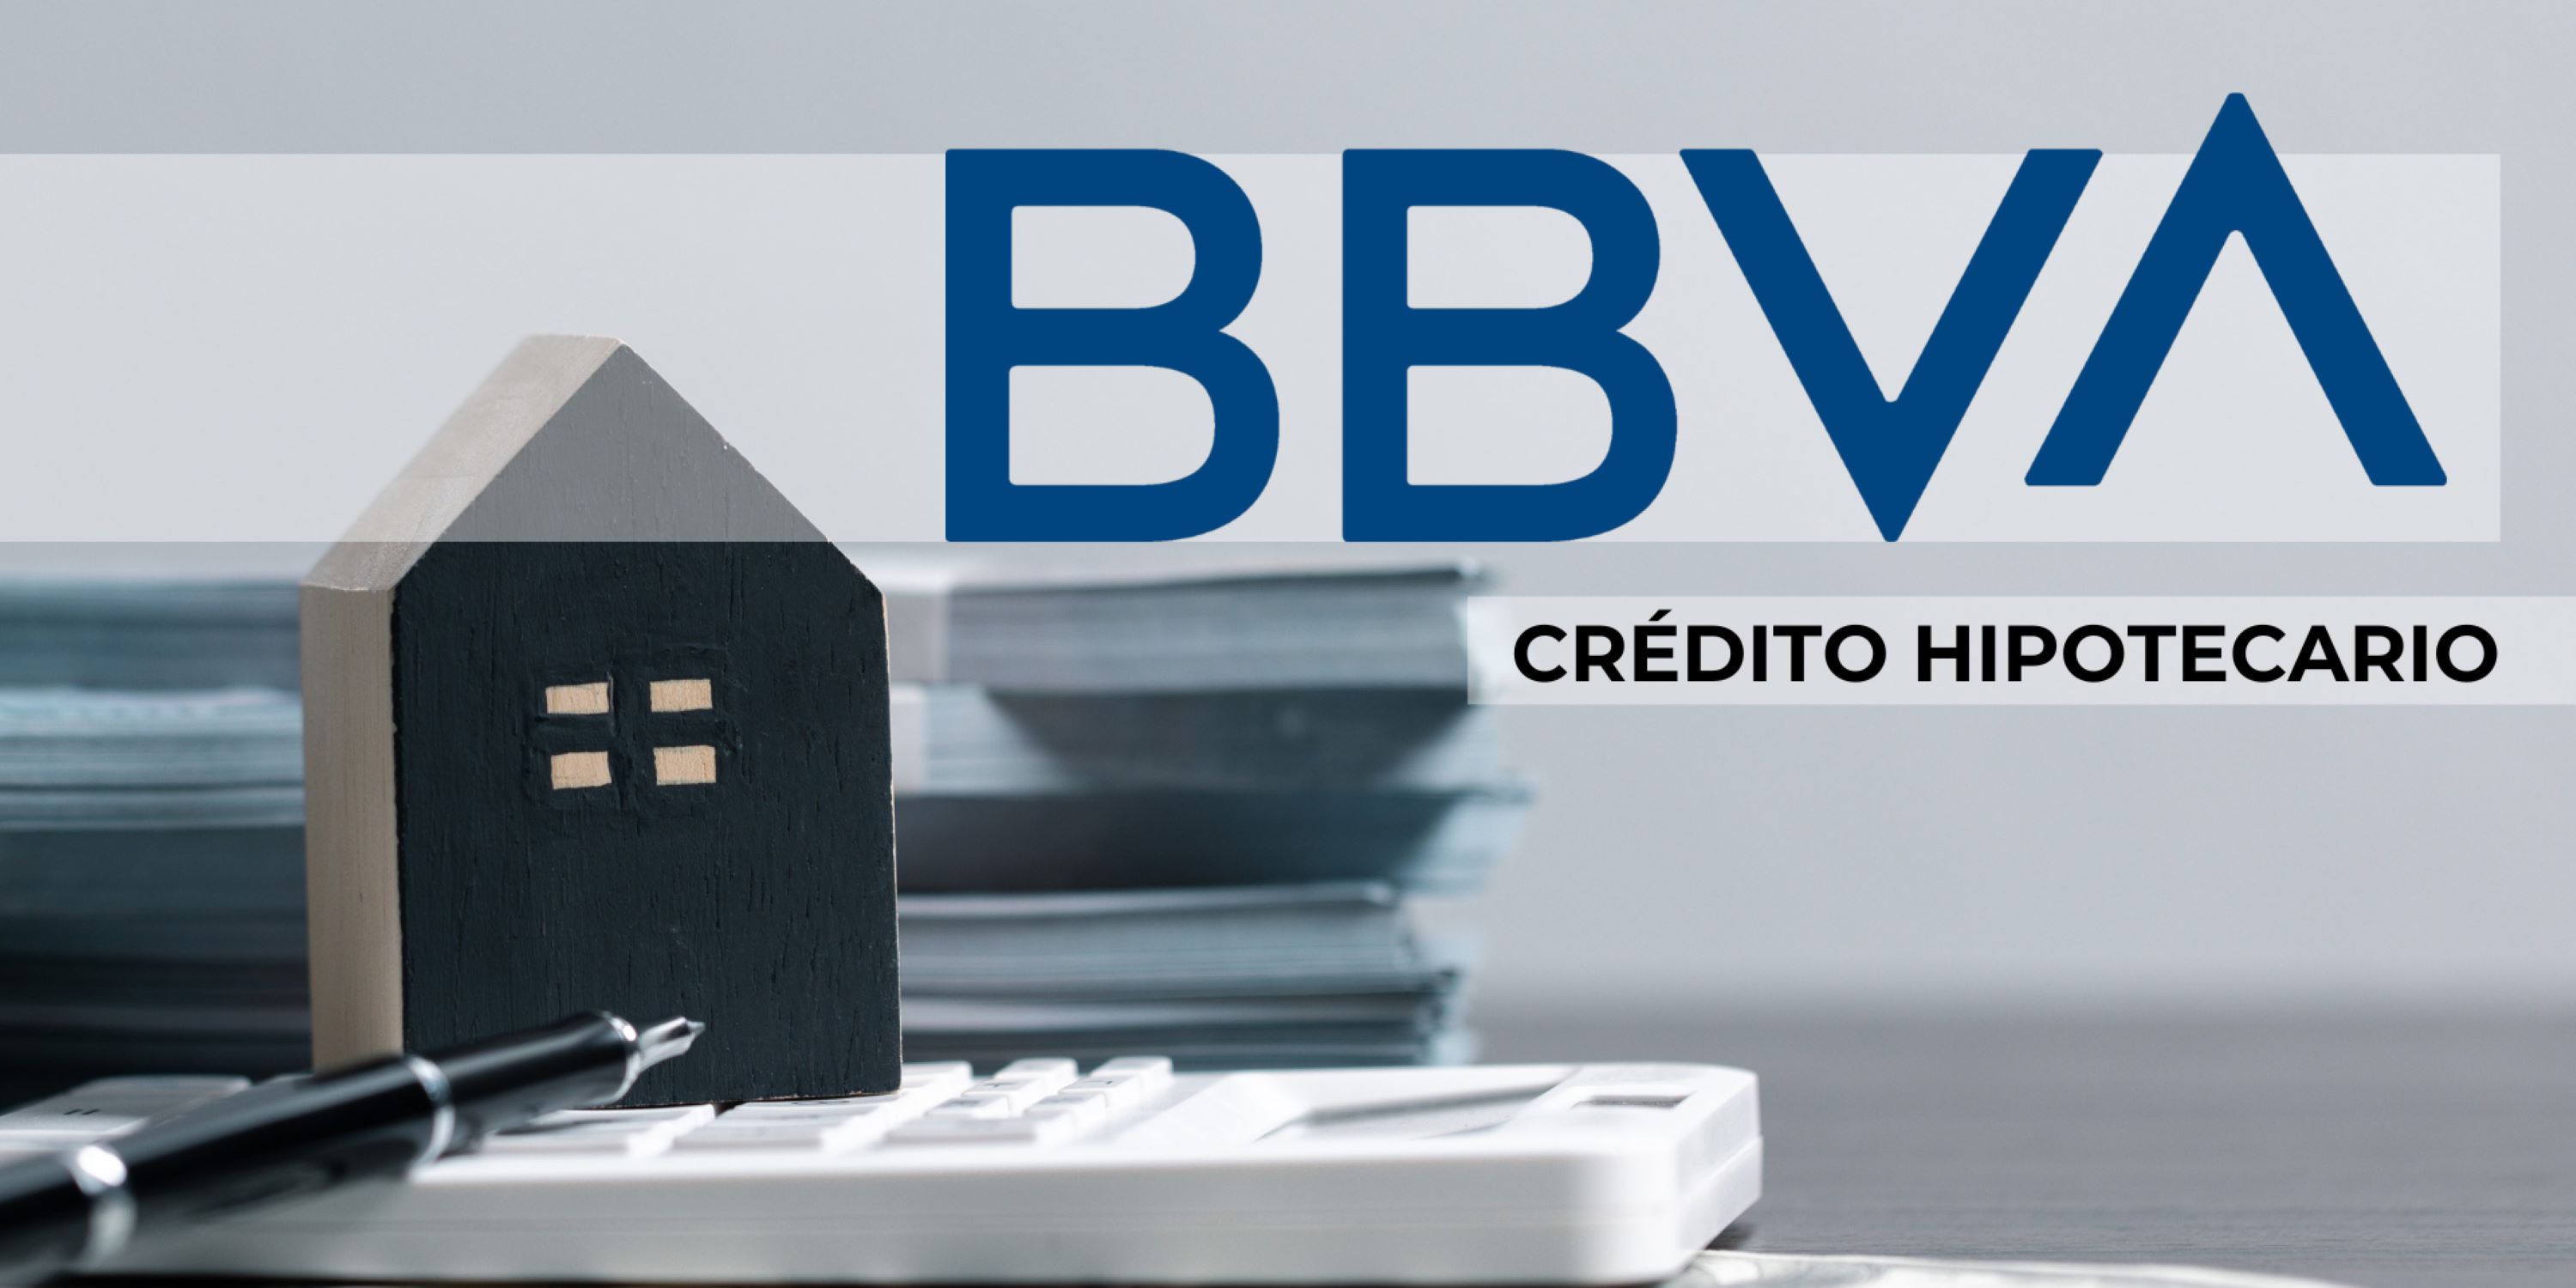 Guía completa para solicitar un crédito hipotecario BBVA. Comprar casa fácil y seguro.